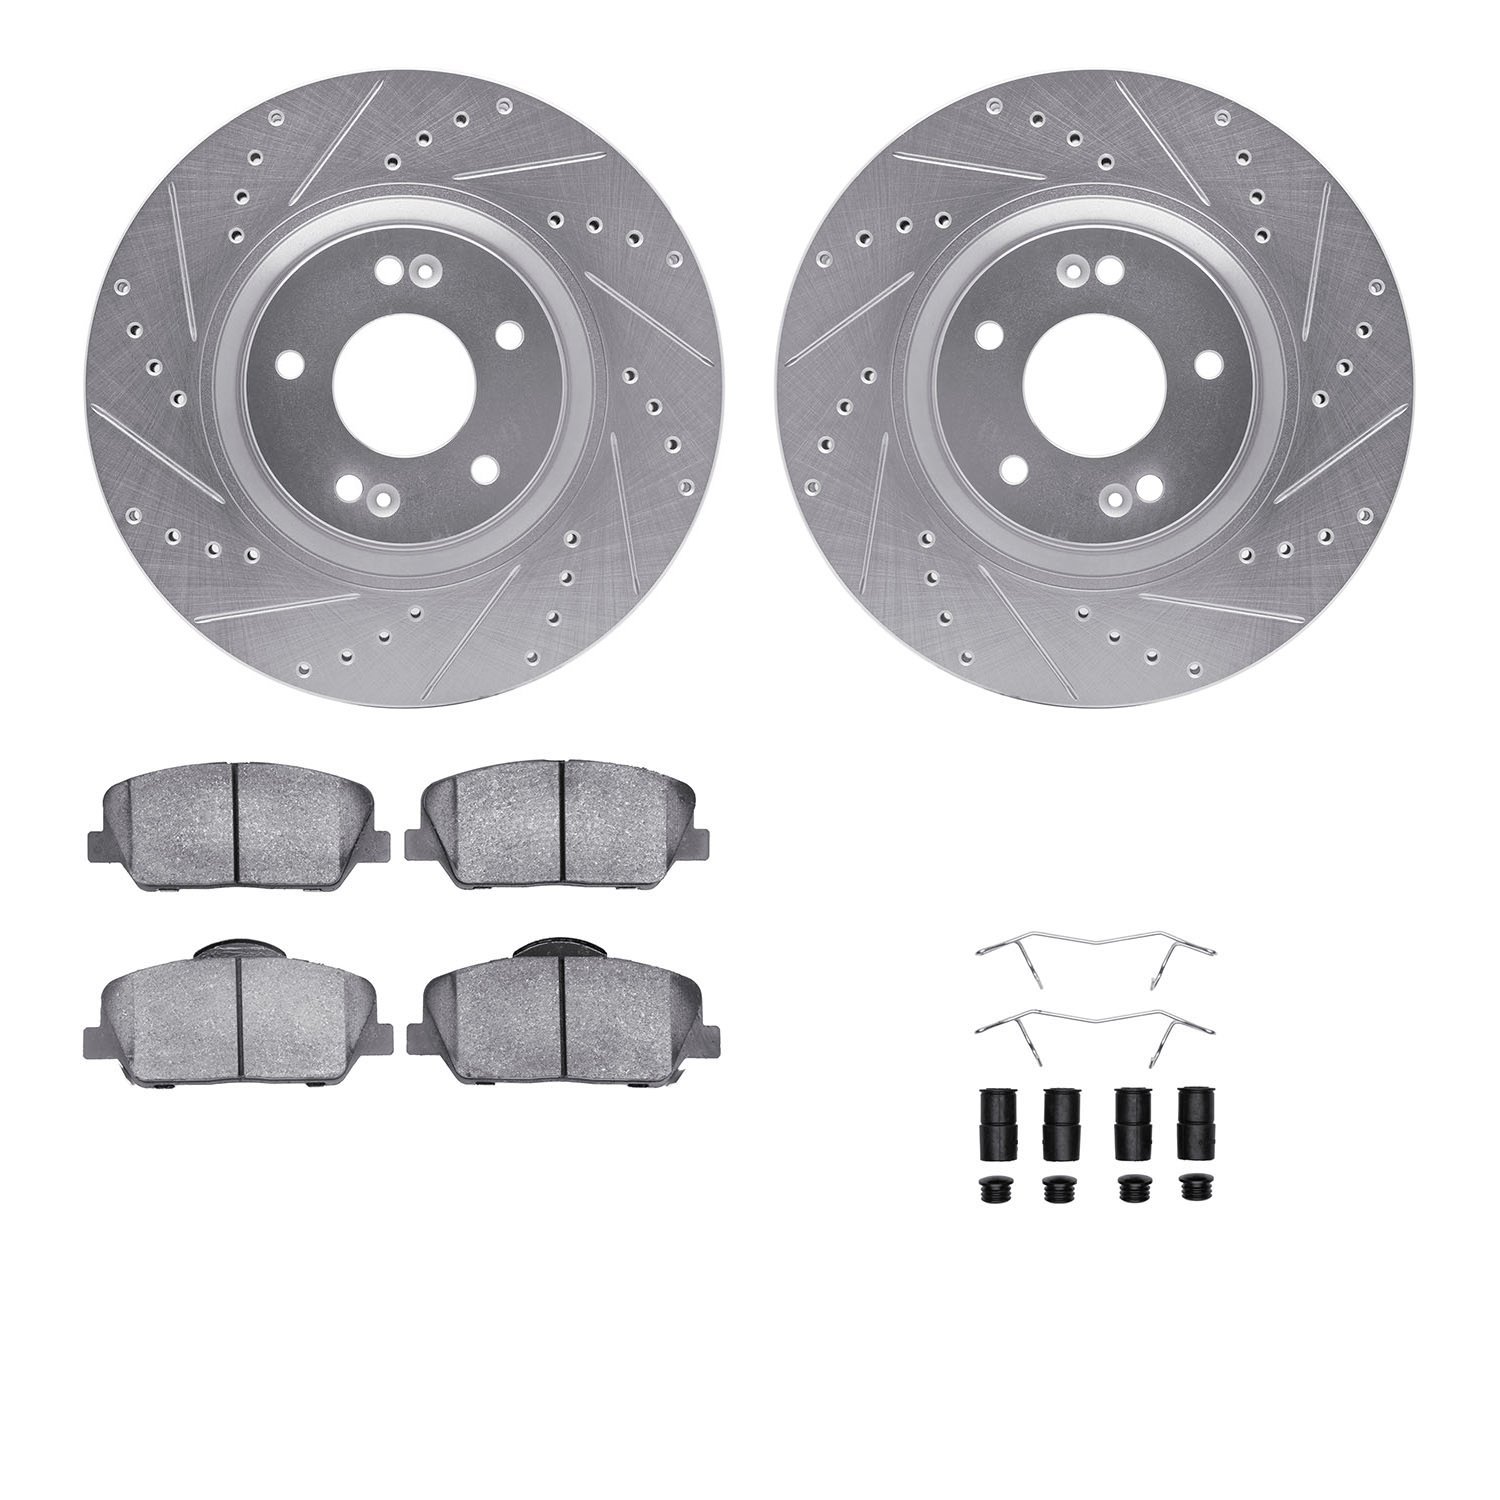 7312-03063 Drilled/Slotted Brake Rotor with 3000-Series Ceramic Brake Pads Kit & Hardware [Silver], 2011-2015 Kia/Hyundai/Genesi